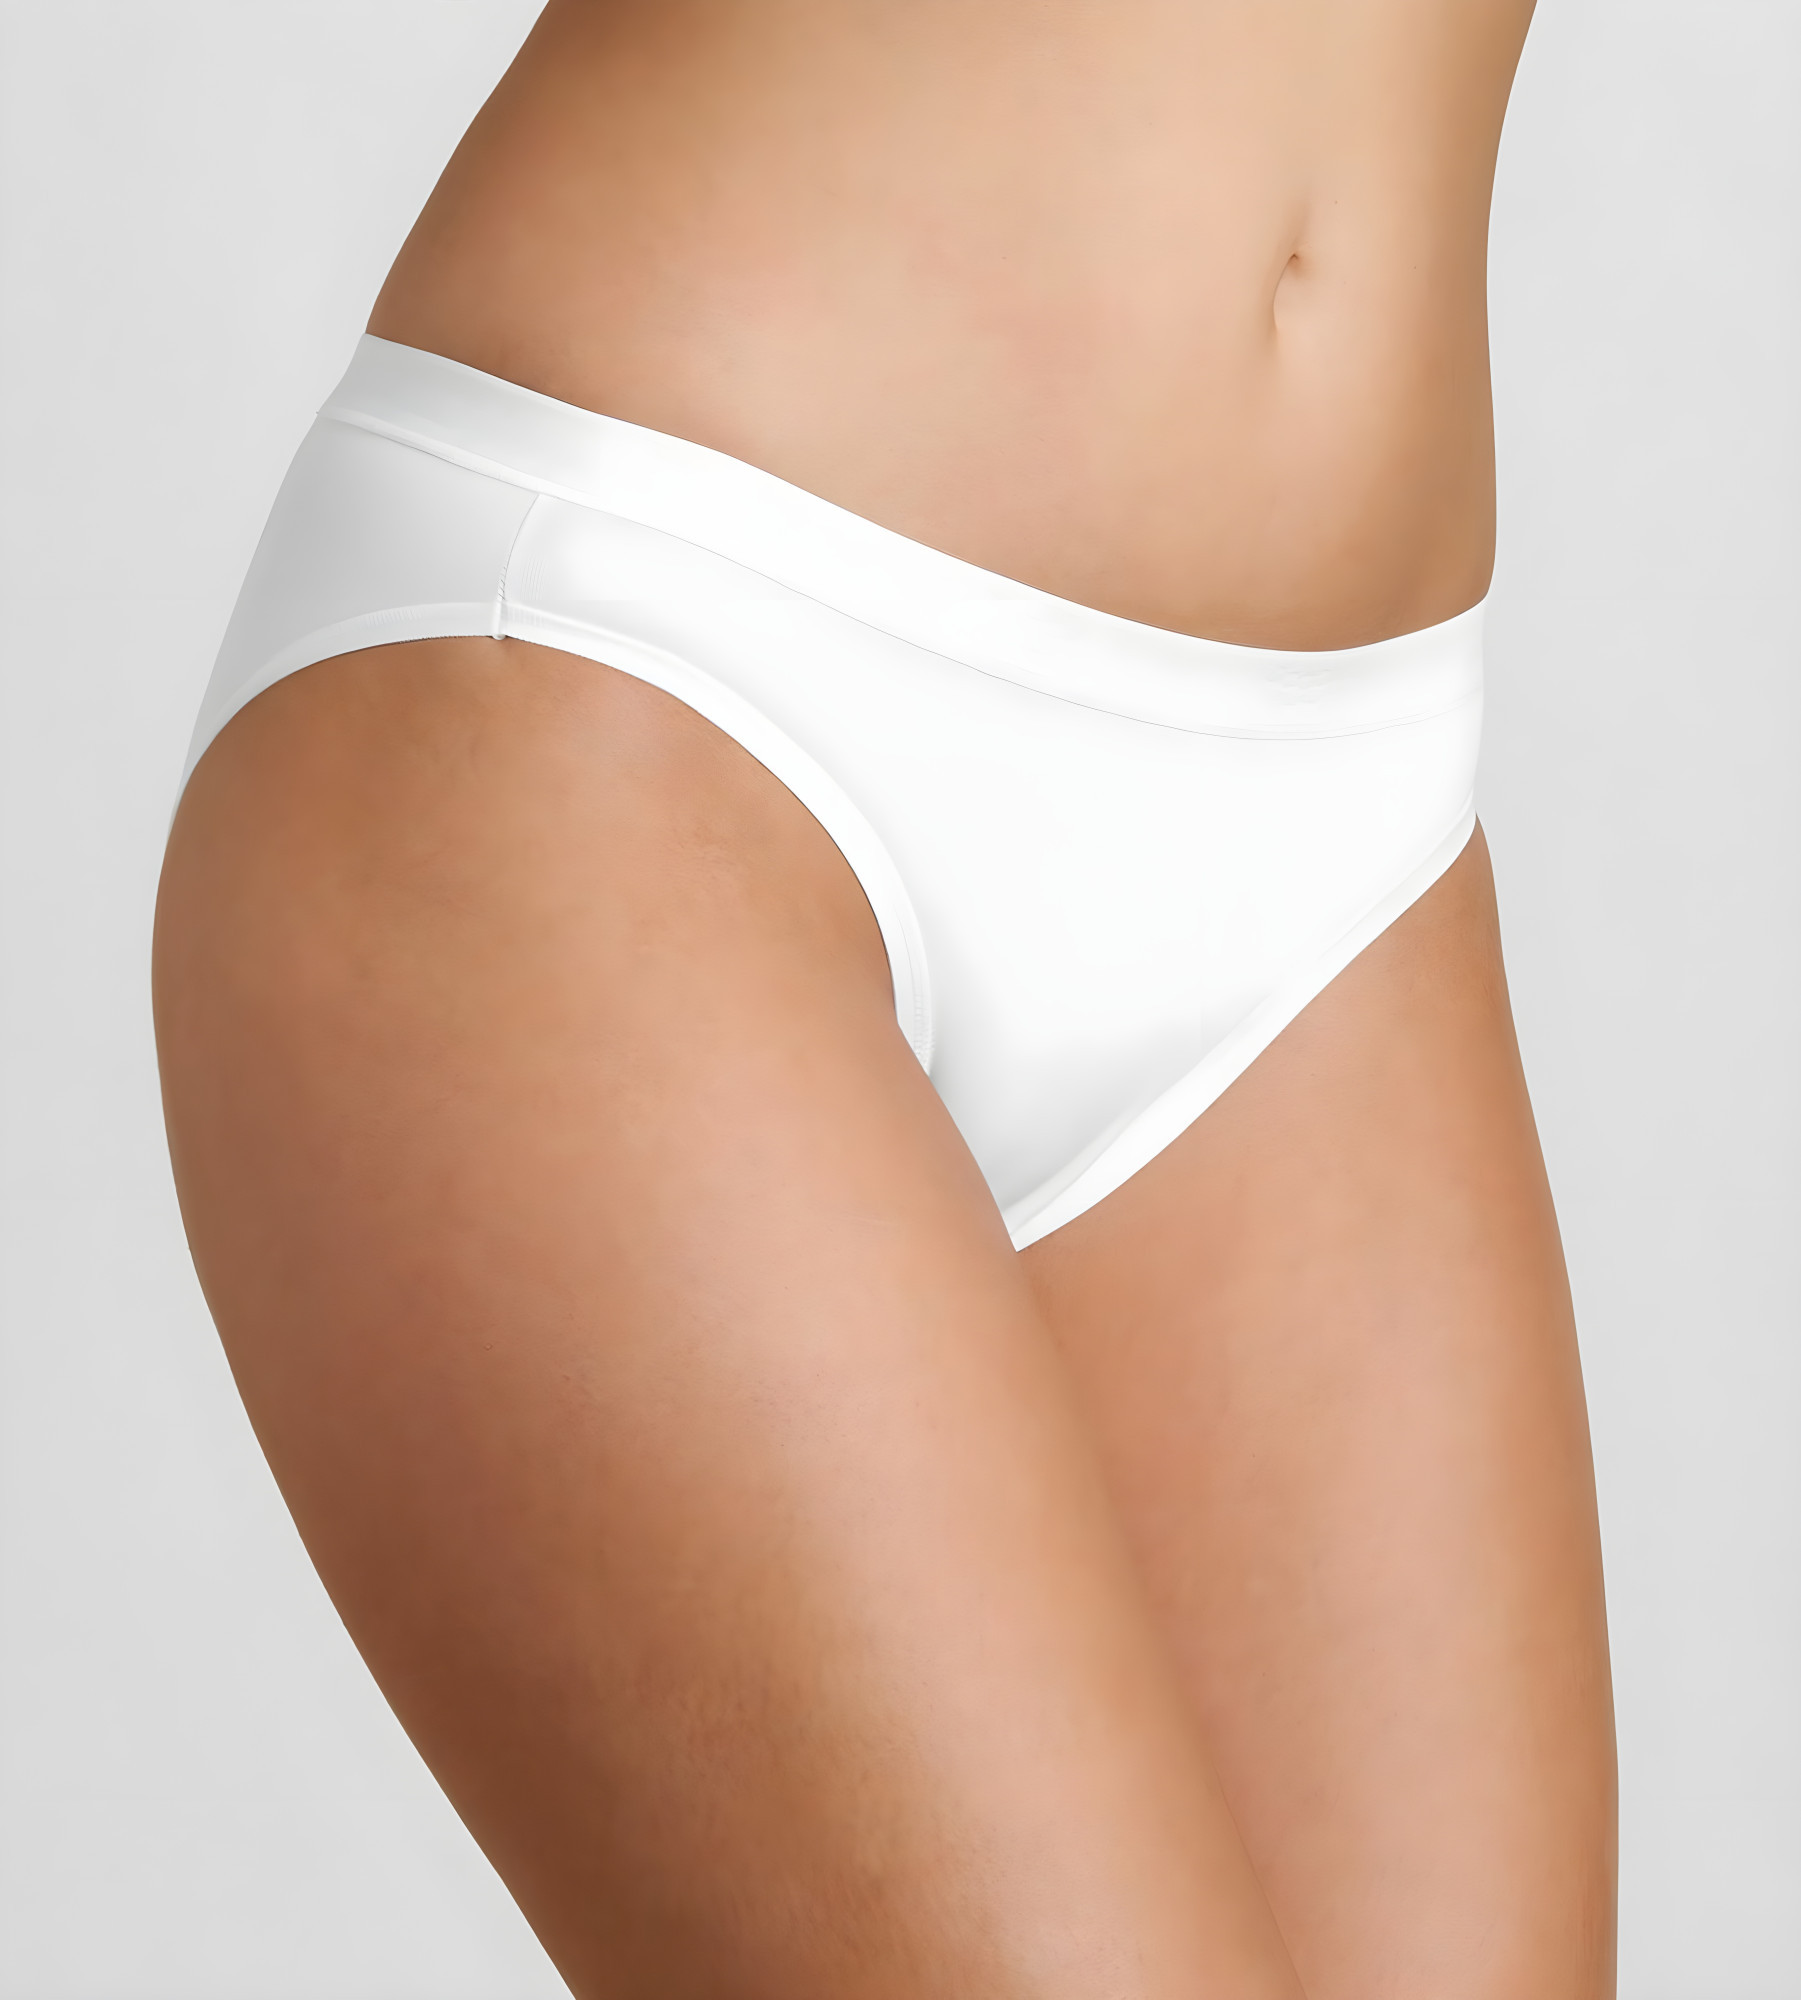 Dámské kalhotky Sensual Fresh Tai bílé - Sloggi WHITE 38